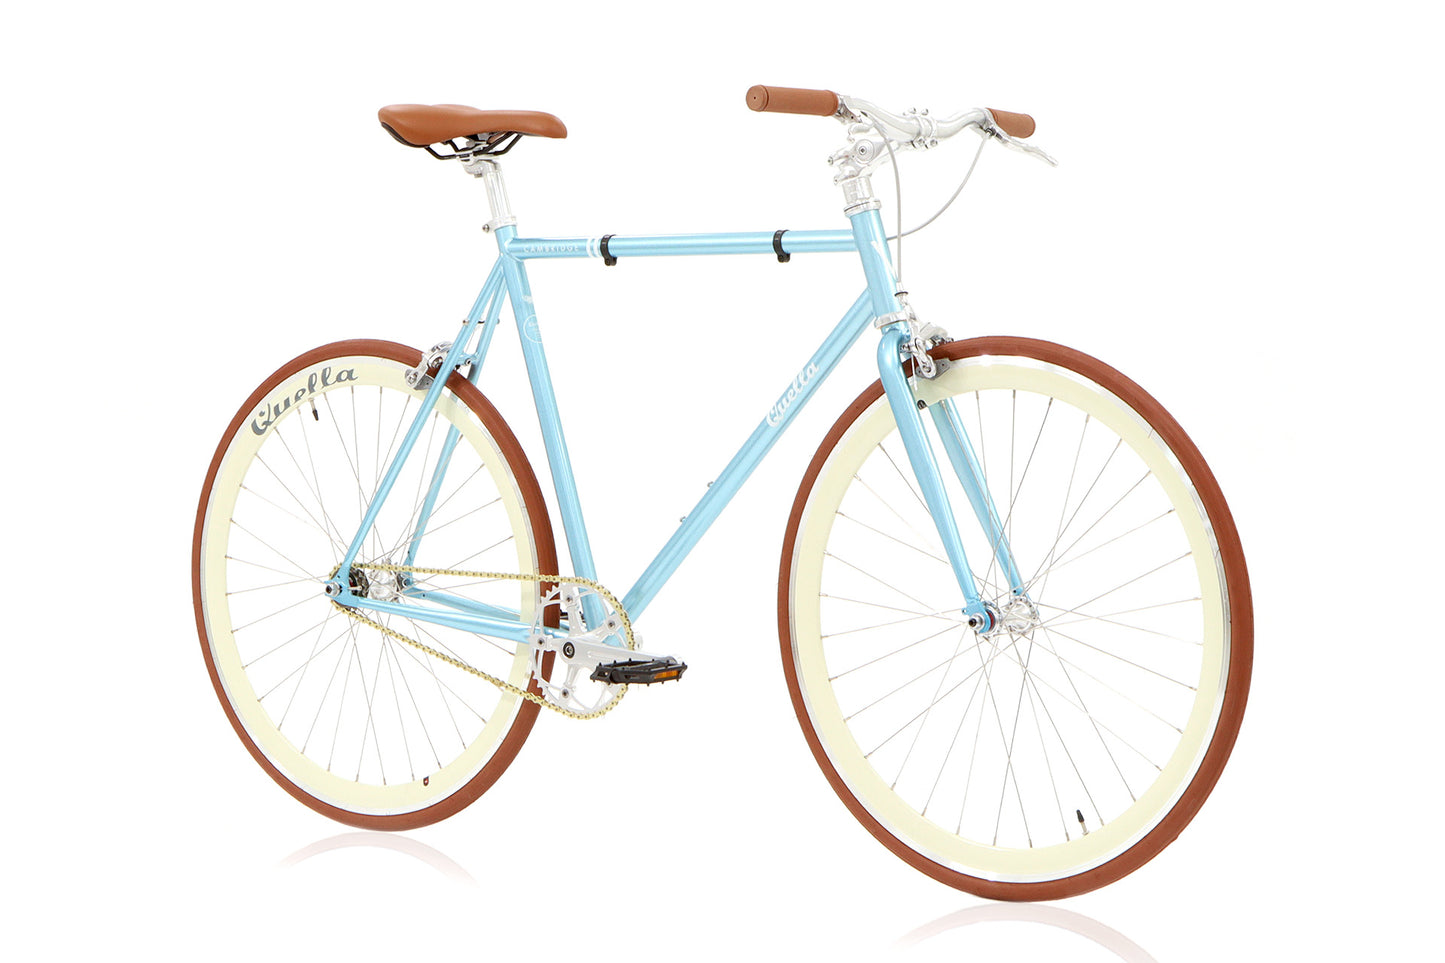 Varsity Cambridge Classic Single-Speed Bicycle - Cream